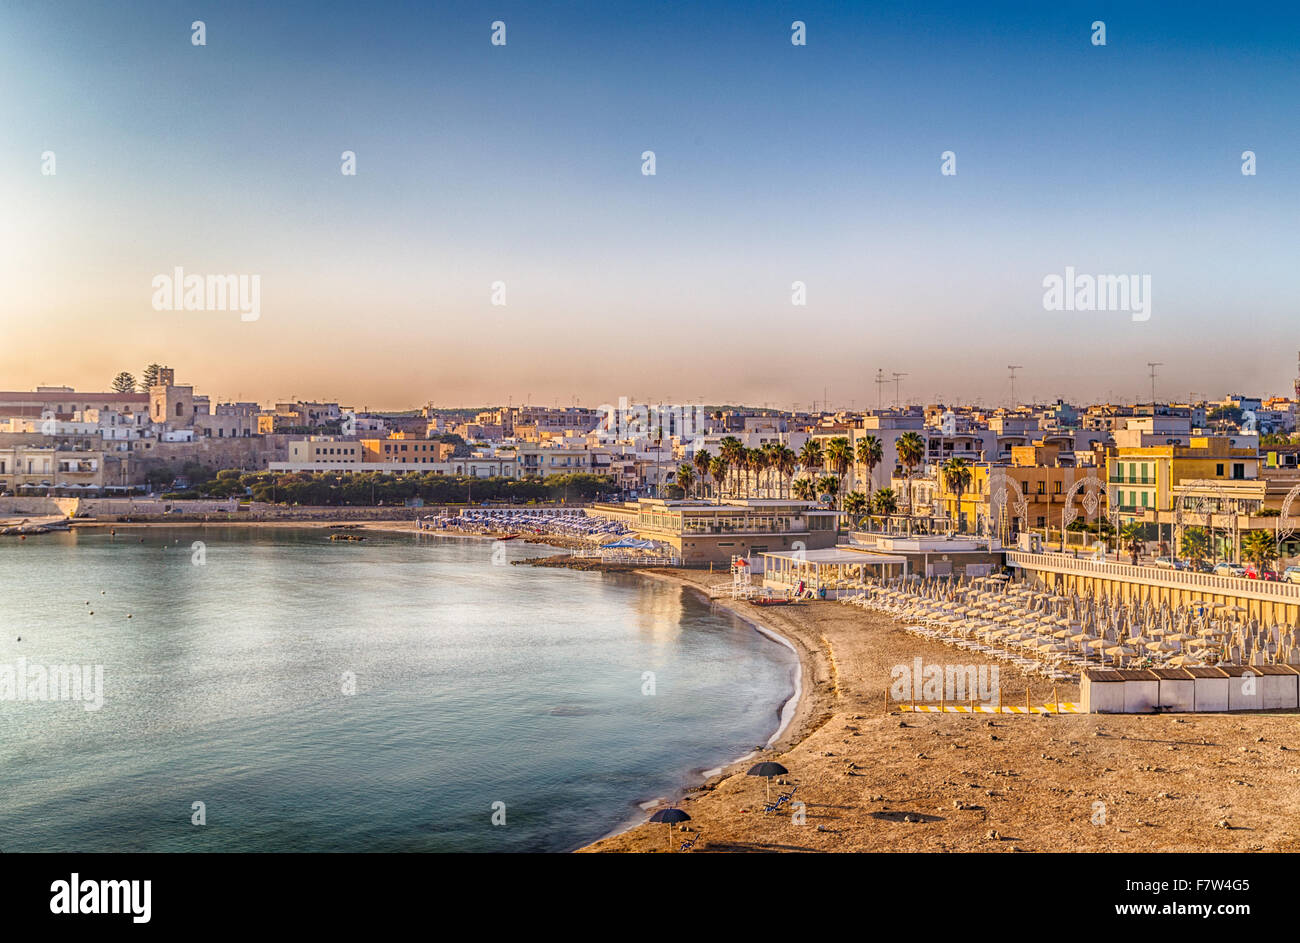 Bay of Otranto, Greek-Messapian city on the Adriatic Sea in Italy Stock Photo